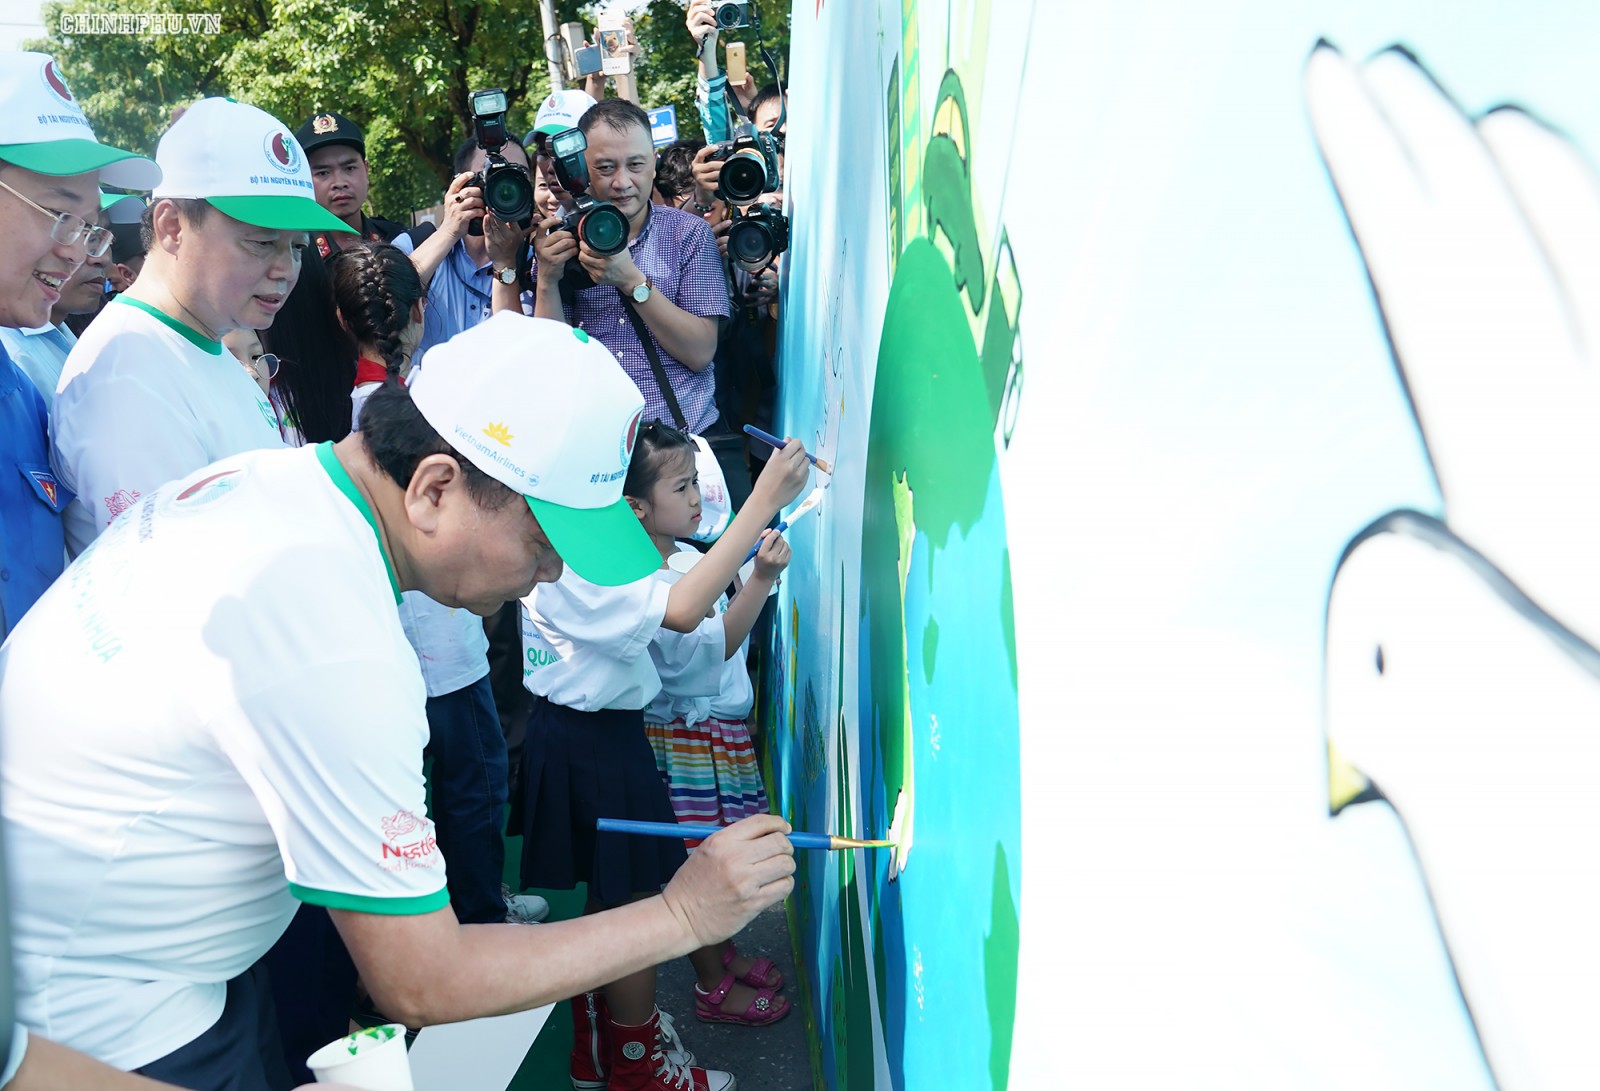 Thủ tướng cùng các em thiếu nhi vẽ tranh cổ vũ phong trào chống rác thải nhựa. Ảnh: VGP/Quang Hiếu